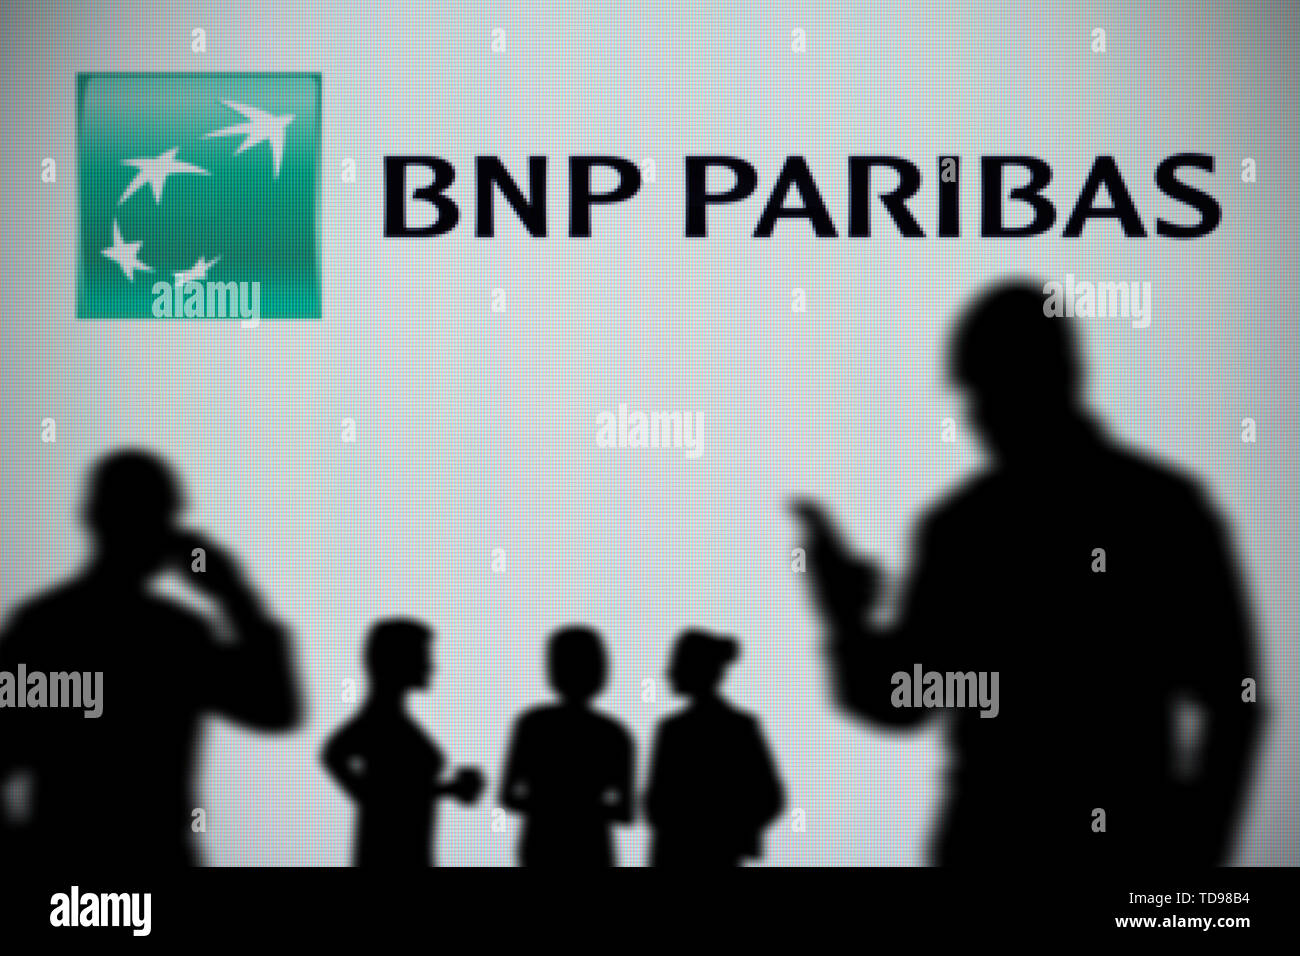 El logotipo de BNP Paribas es visto en una pantalla LED en el fondo mientras una silueta persona utiliza un smartphone en primer plano (uso Editorial solamente) Foto de stock